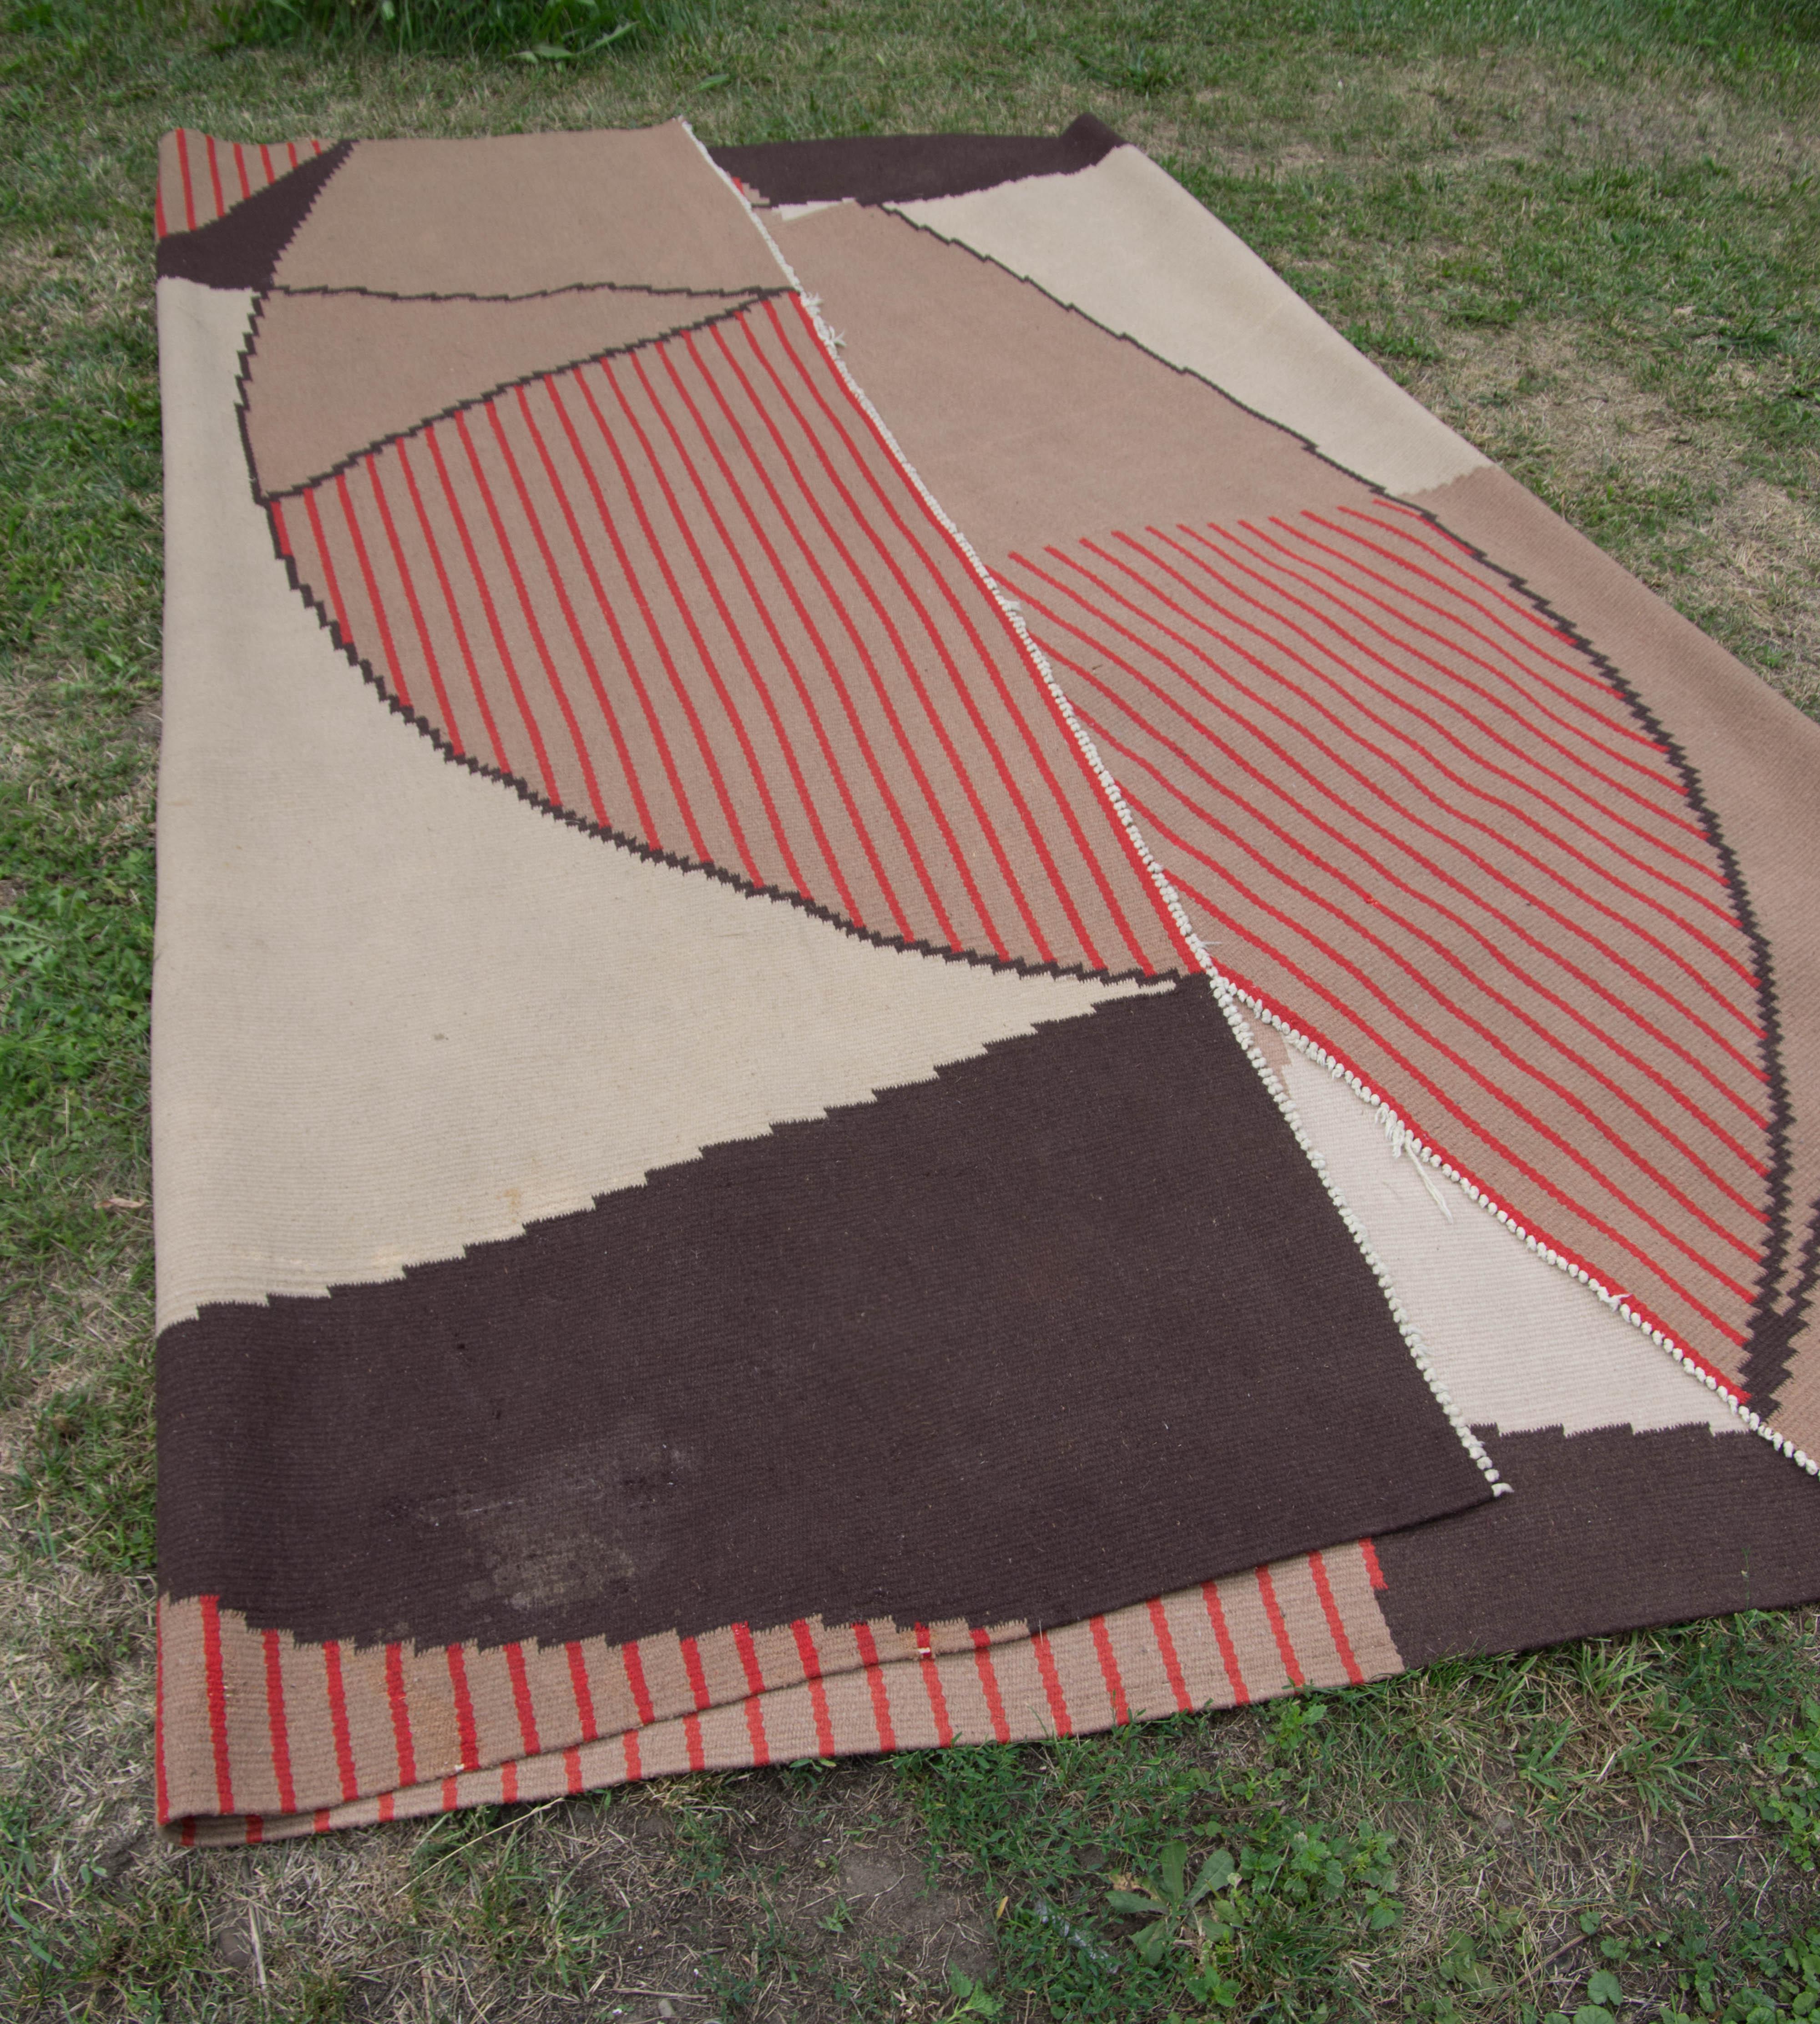 Großer Teppich mit geometrischem Muster im Stil von Antonin Kybal.
Hergestellt in der Tschechoslowakei in den 1950er Jahren.
Einige Mottenschäden auf der Unterseite - auf der Oberseite nicht sichtbar.